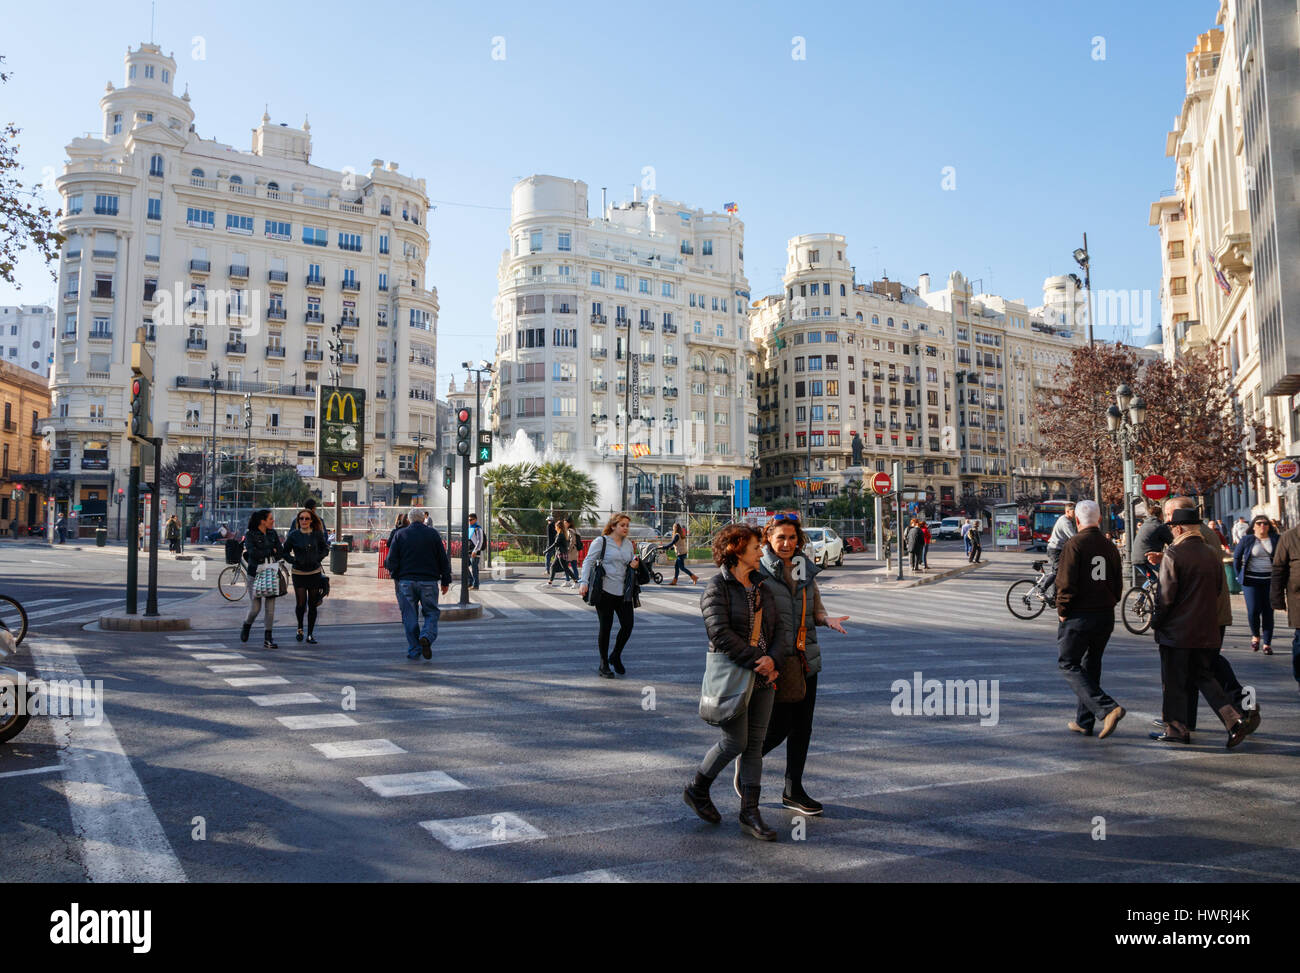 Vista su Plaza del Ayuntamiento (Modernisme Piazza del Municipio di Valencia) non identificato con i pedoni che attraversano la strada. Valencia, Spagna. Foto Stock